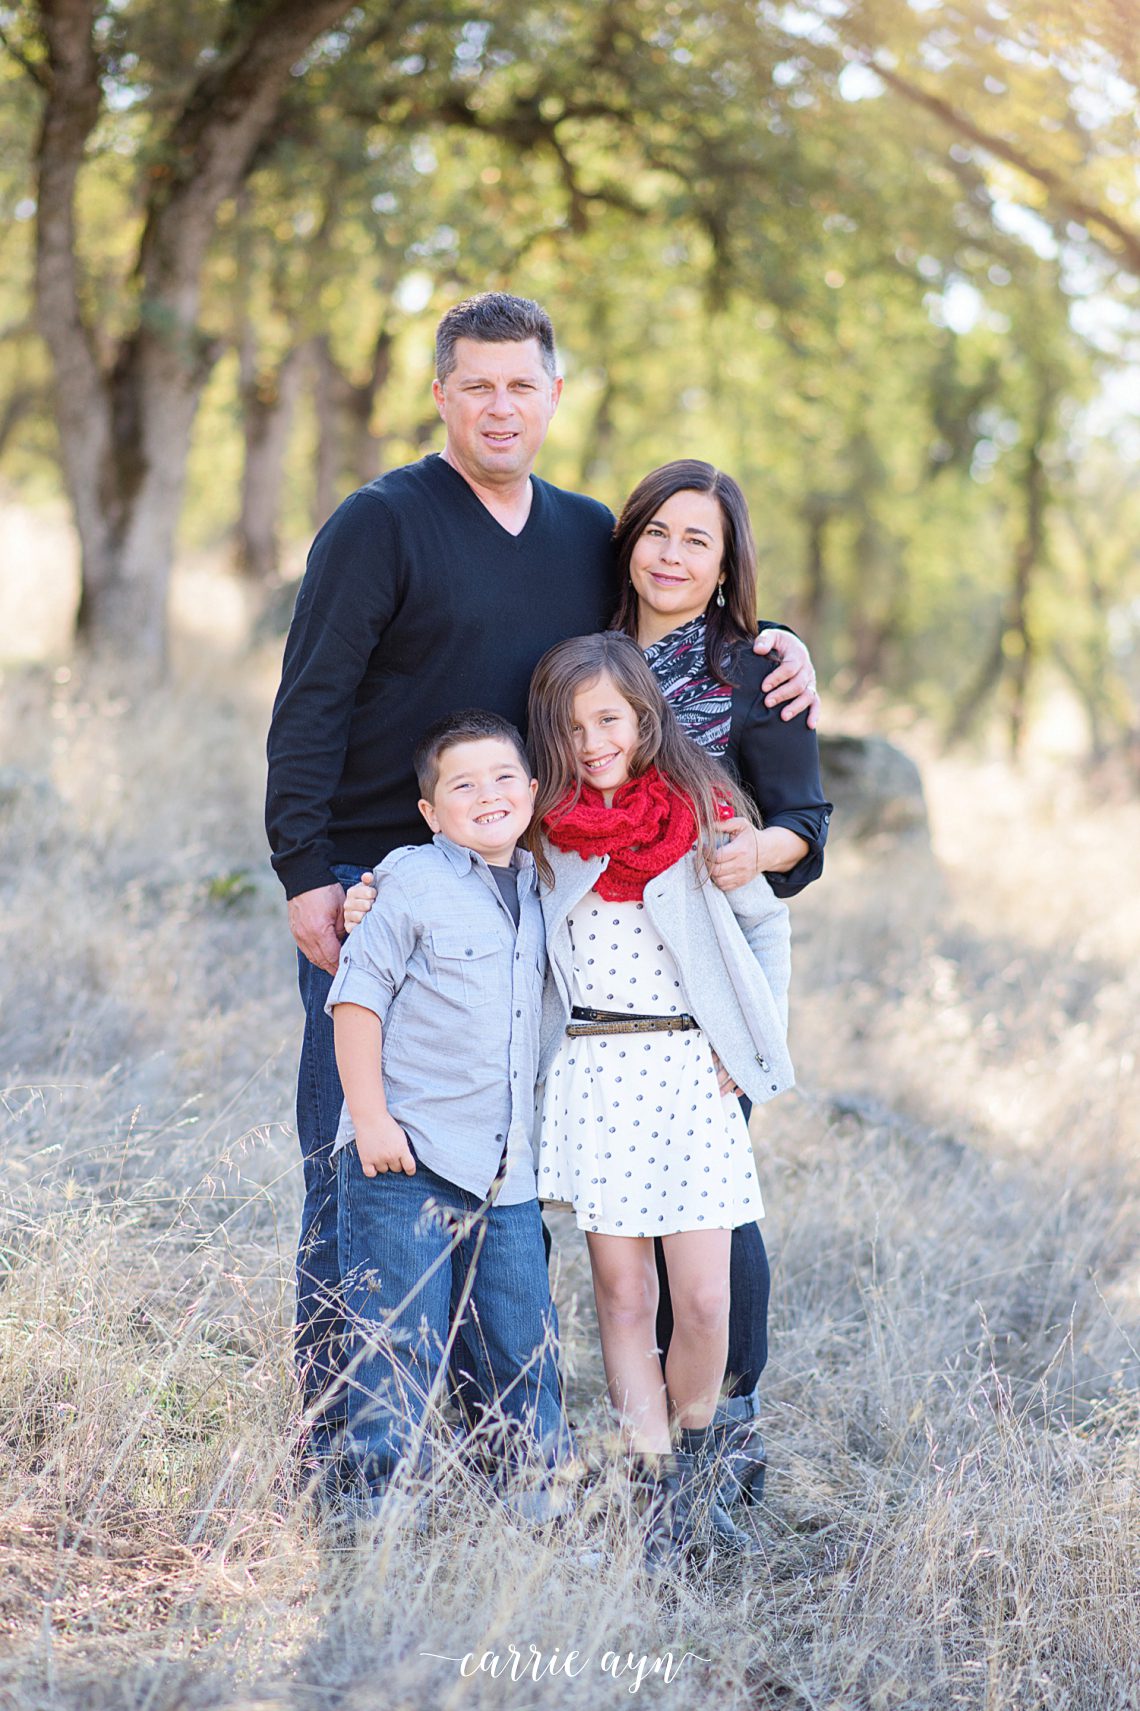 Carrie Ayn; El Dorado Hills Photographer; Family Photographer; Cameron Park Photographer; Sacramento Photographer